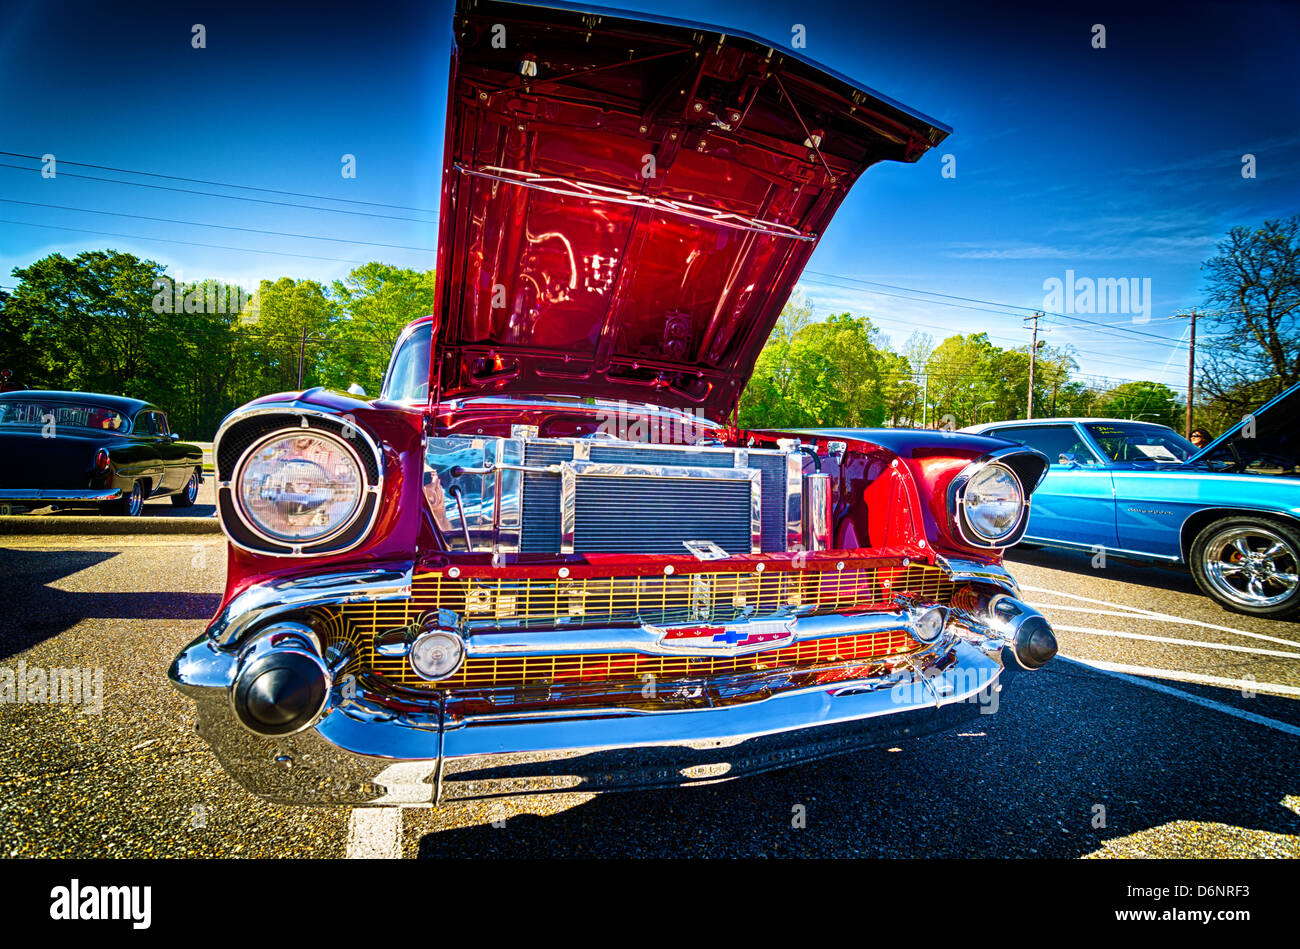 Antique rouge voiture Chevrolet au salon de l'automobile. Banque D'Images